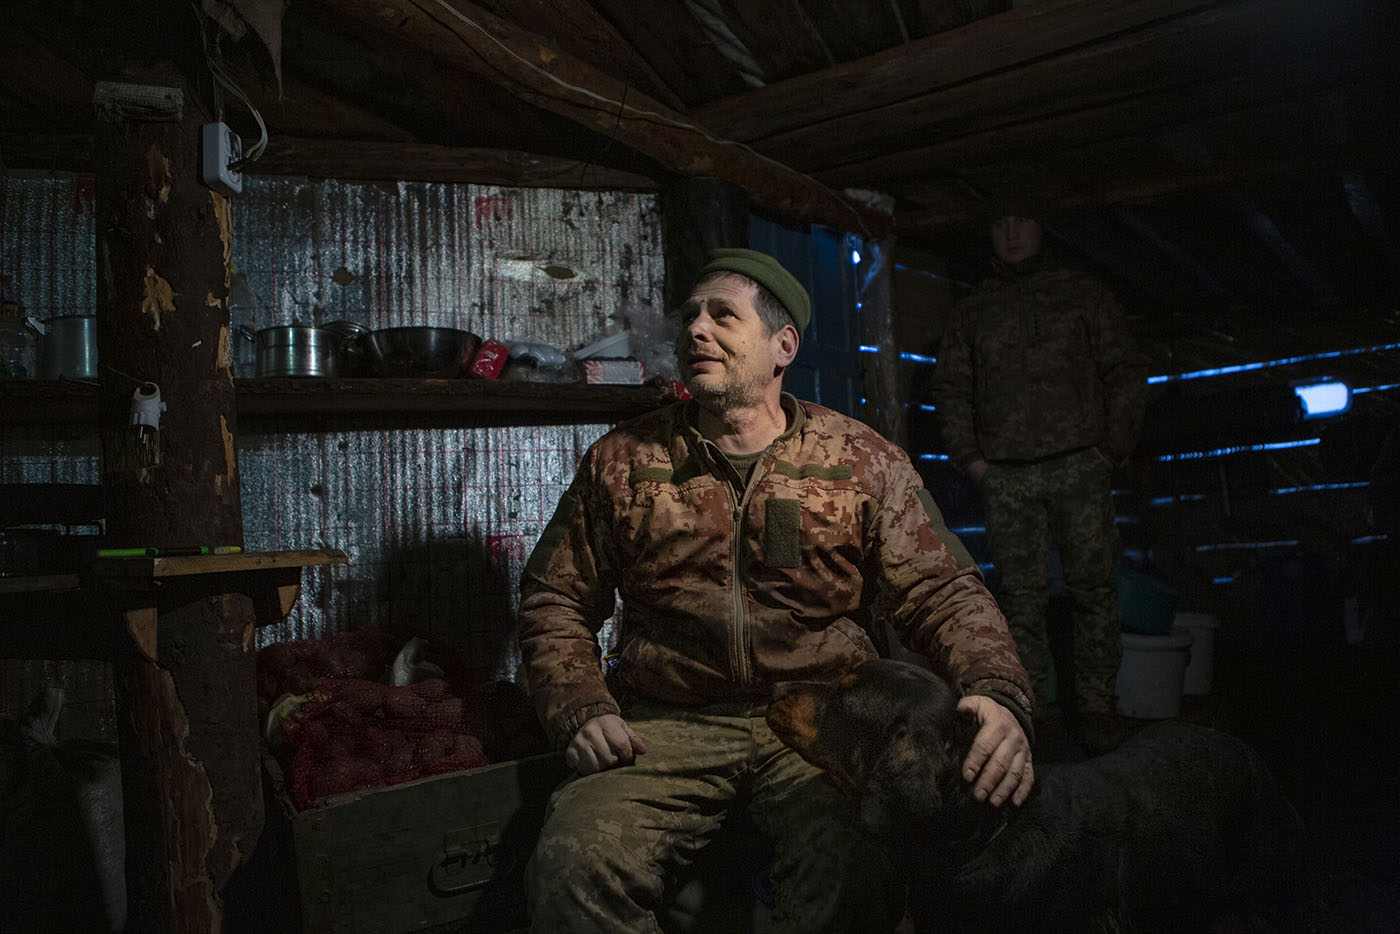 Ukraine - Ready for war | Michele Cirillo